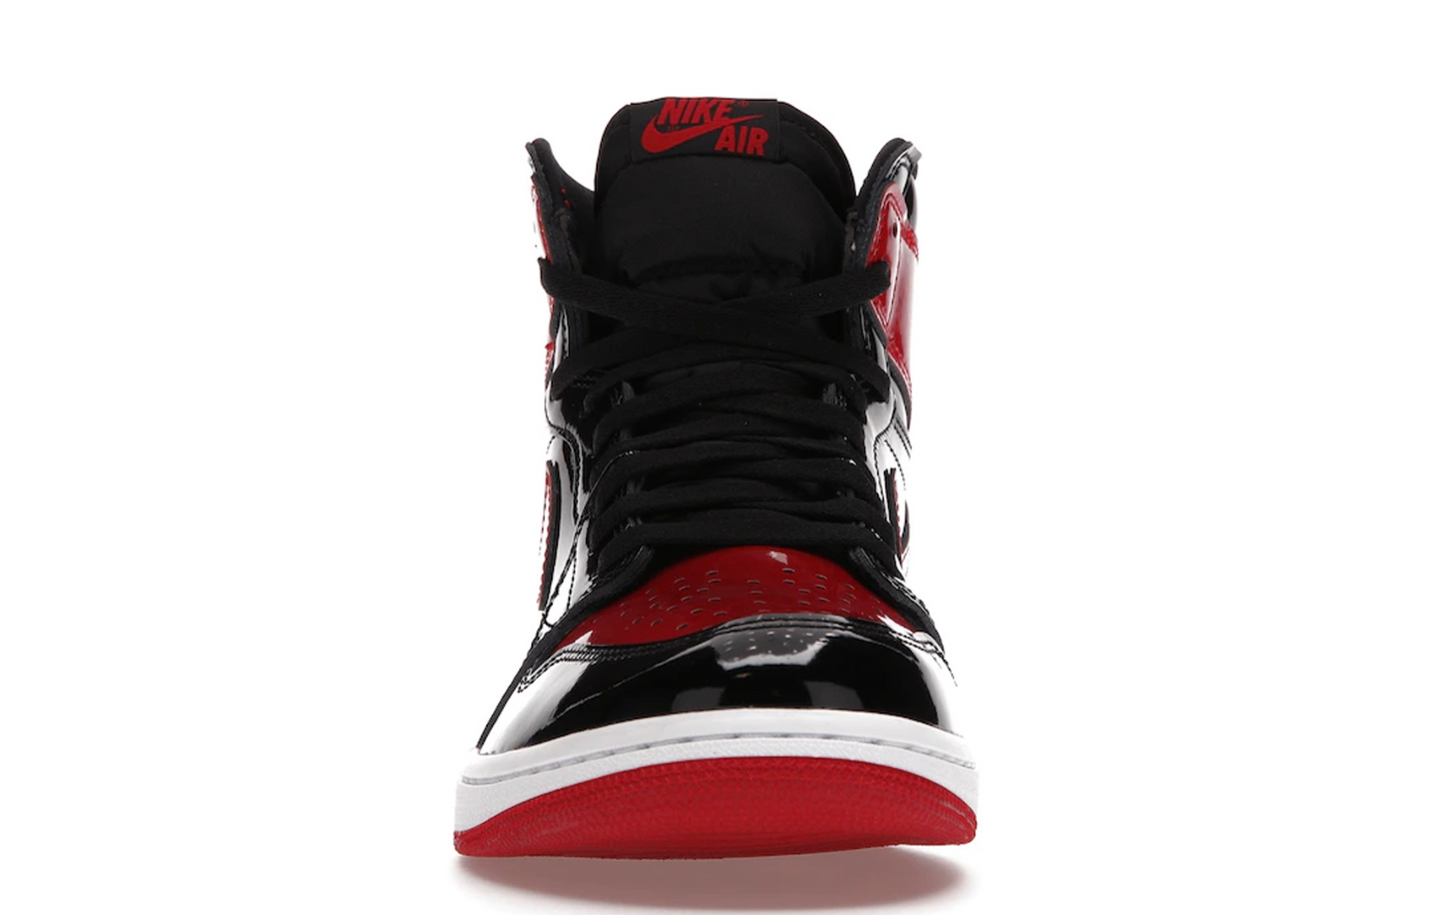 Nike Jordan 1 Retro High OG Patent Bred